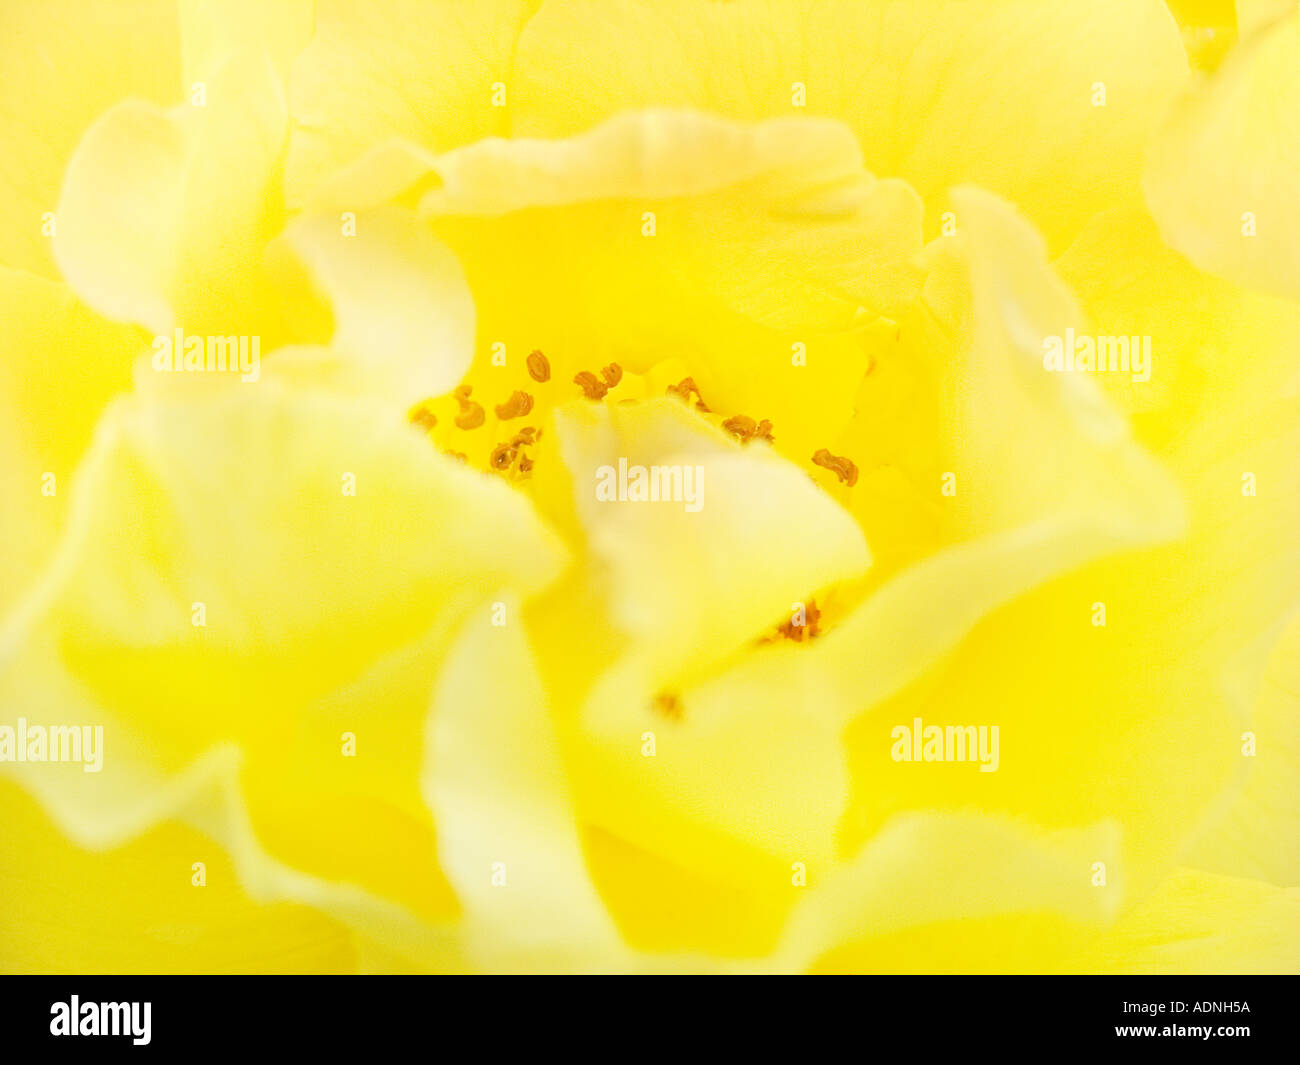 All'interno di una rosa gialla STAME POLLINE FIORE BLOSSOM Foto Stock